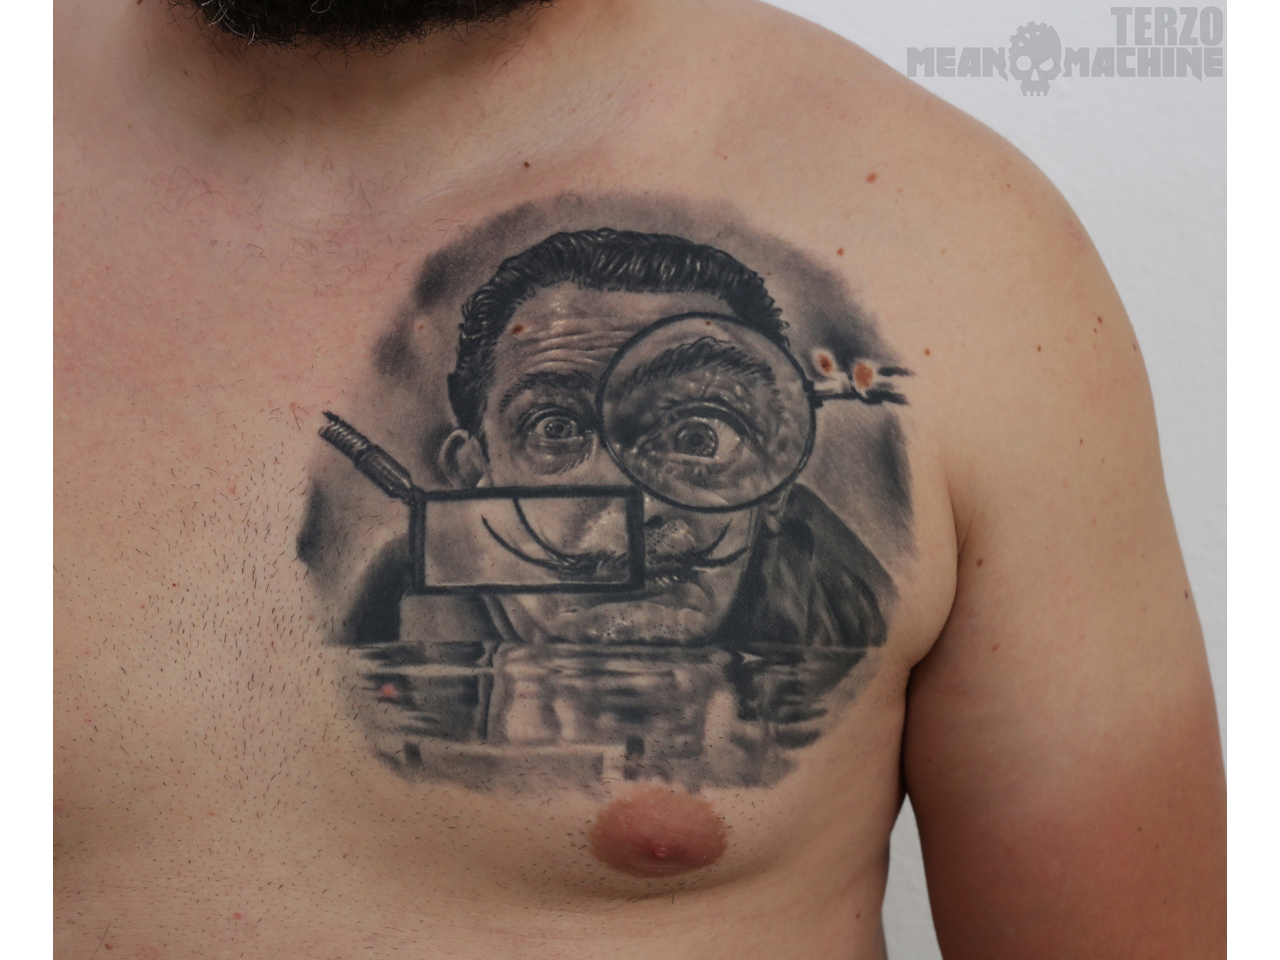 MEAN MACHINE TATTOO Tattoo, piercing Beograd